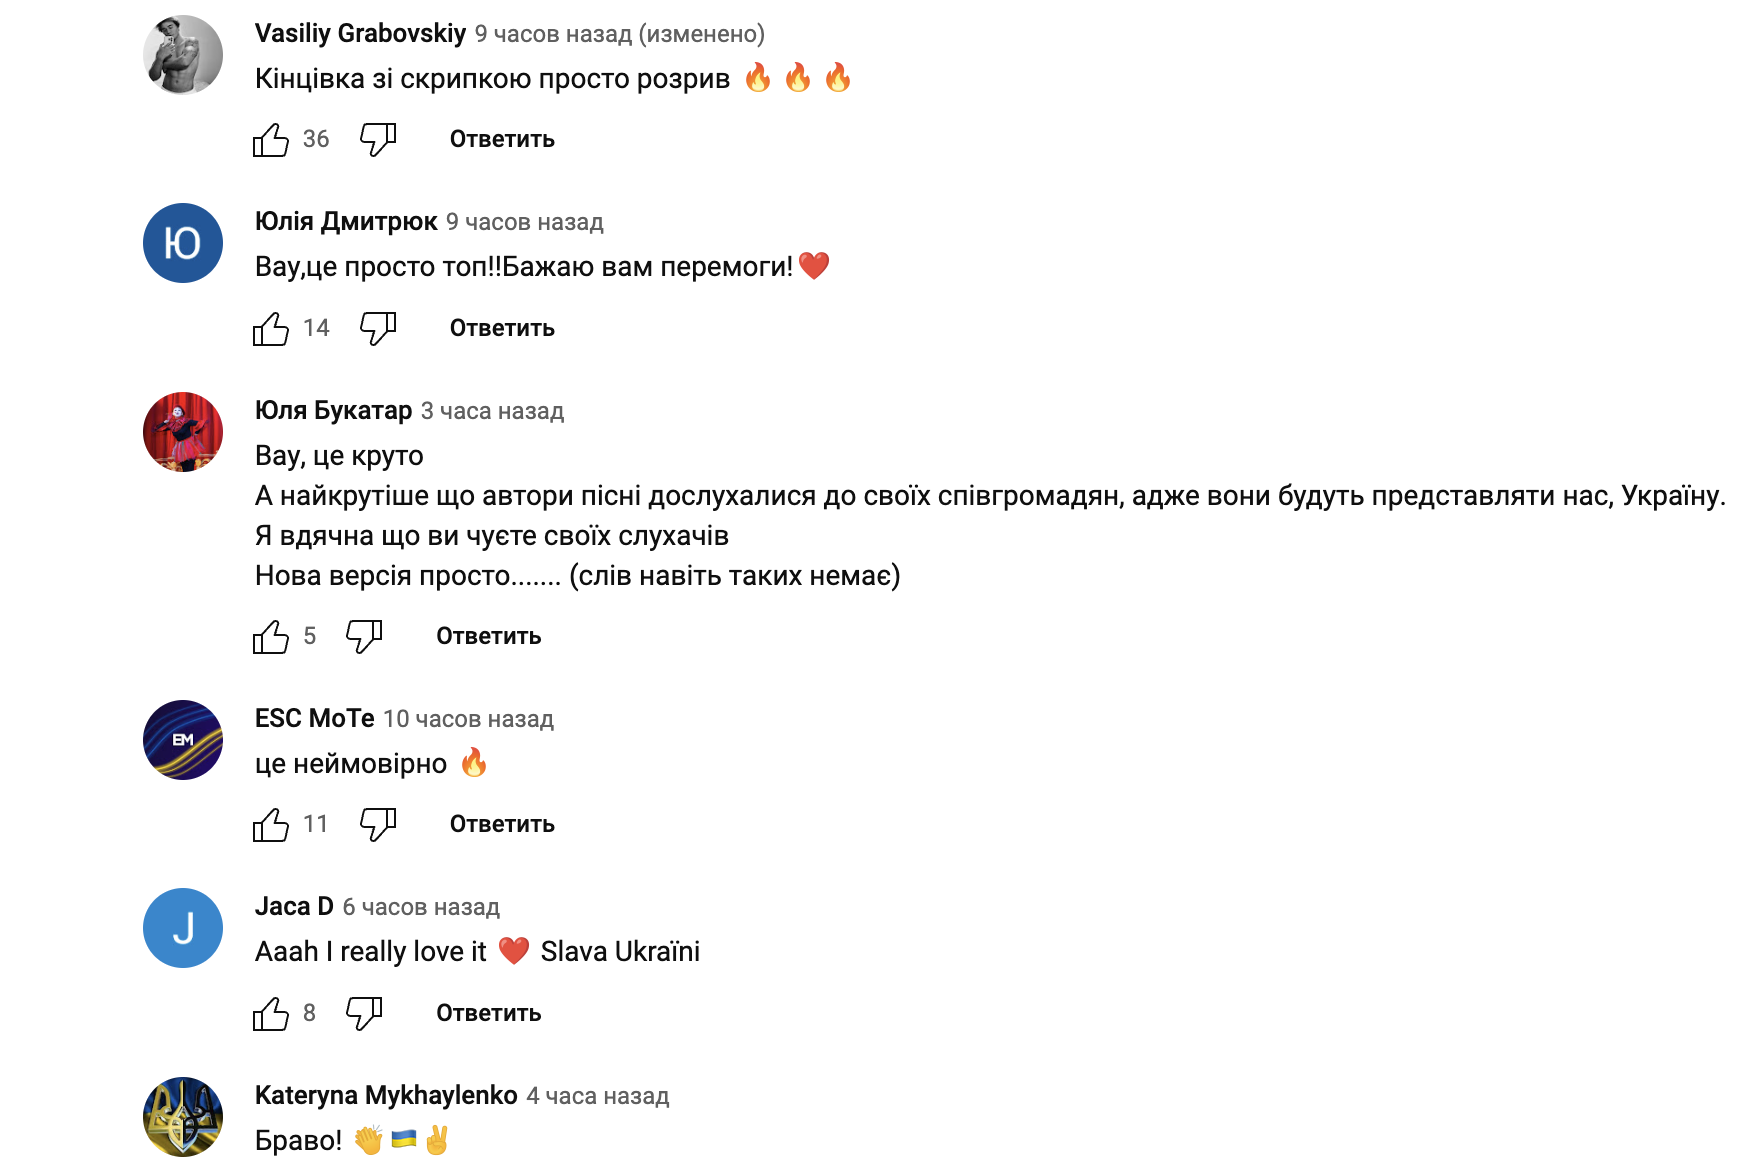 TVORCHI представили обновленную по просьбе украинцев песню Heart of Steel, которую споют на Евровидении: что изменилось и как оценили трек